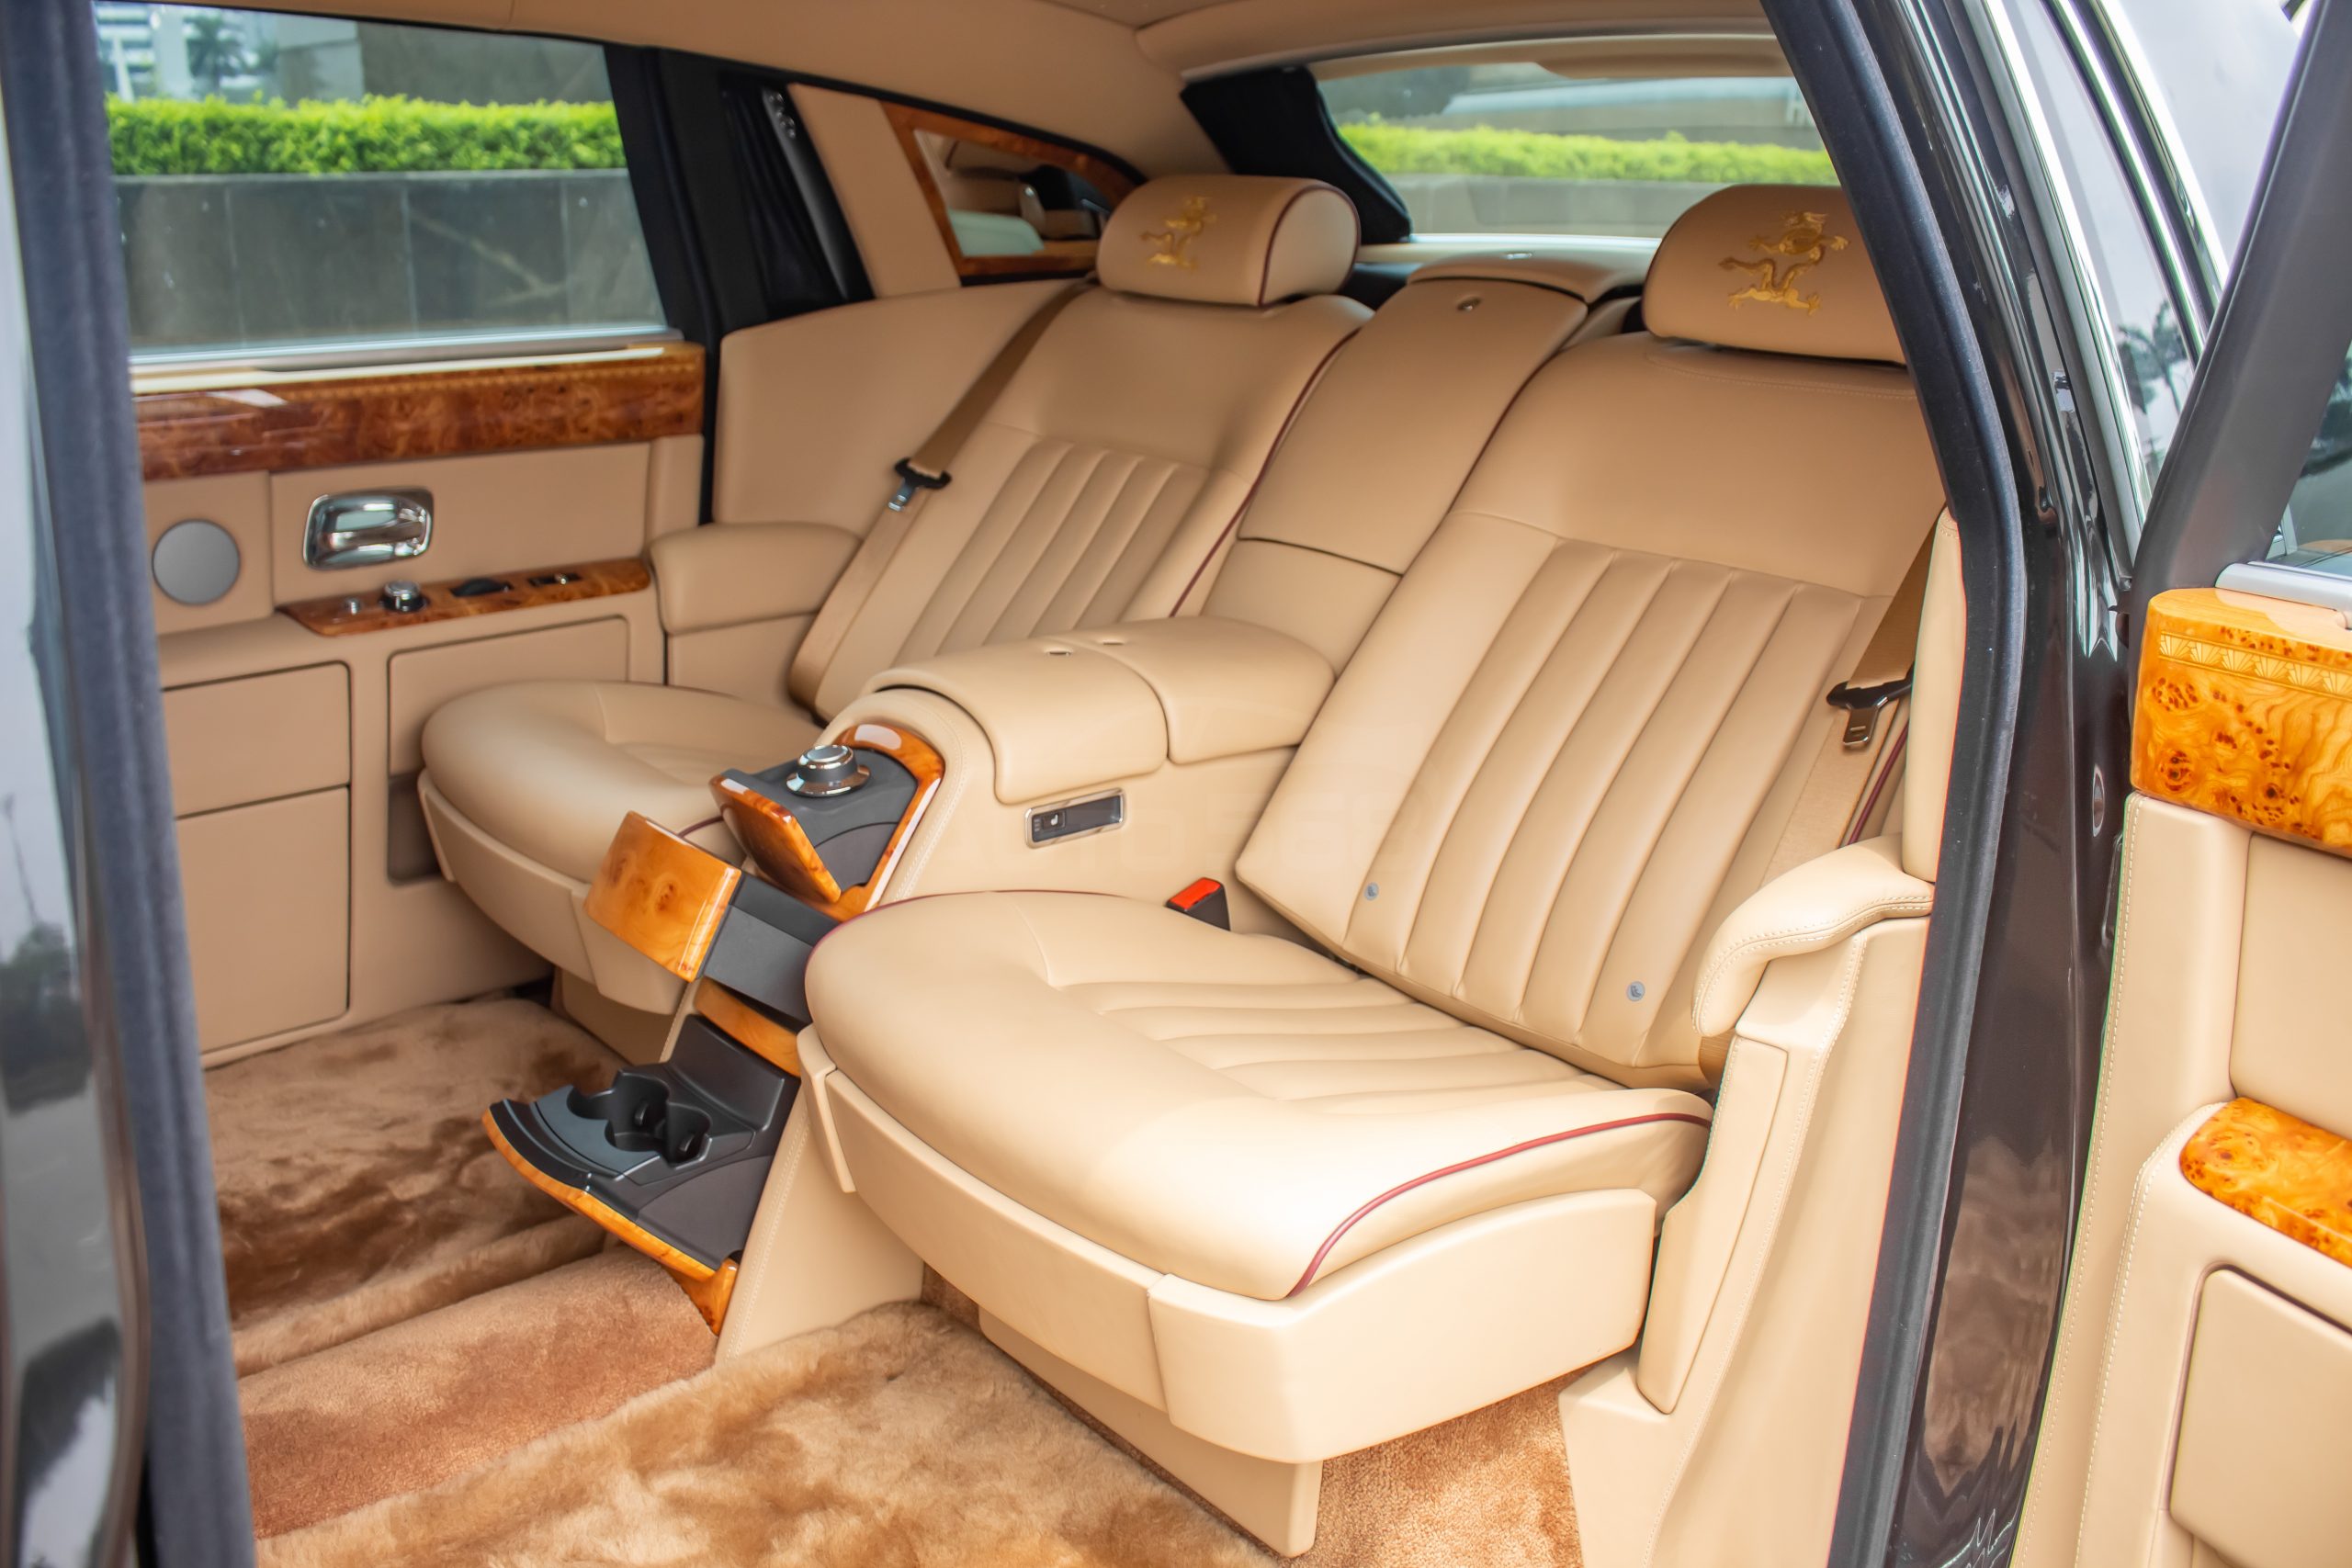 Rolls Royce Phantom Rồng - một chiếc xe ô tô đặc biệt, với thiết kế tinh xảo kết hợp cùng chi tiết rồng trên chính thân xe. Đây là một tuyệt tác của nghệ thuật và công nghệ, sẽ mang đến cho bạn những trải nghiệm độc đáo và đầy ấn tượng trên mọi nẻo đường.